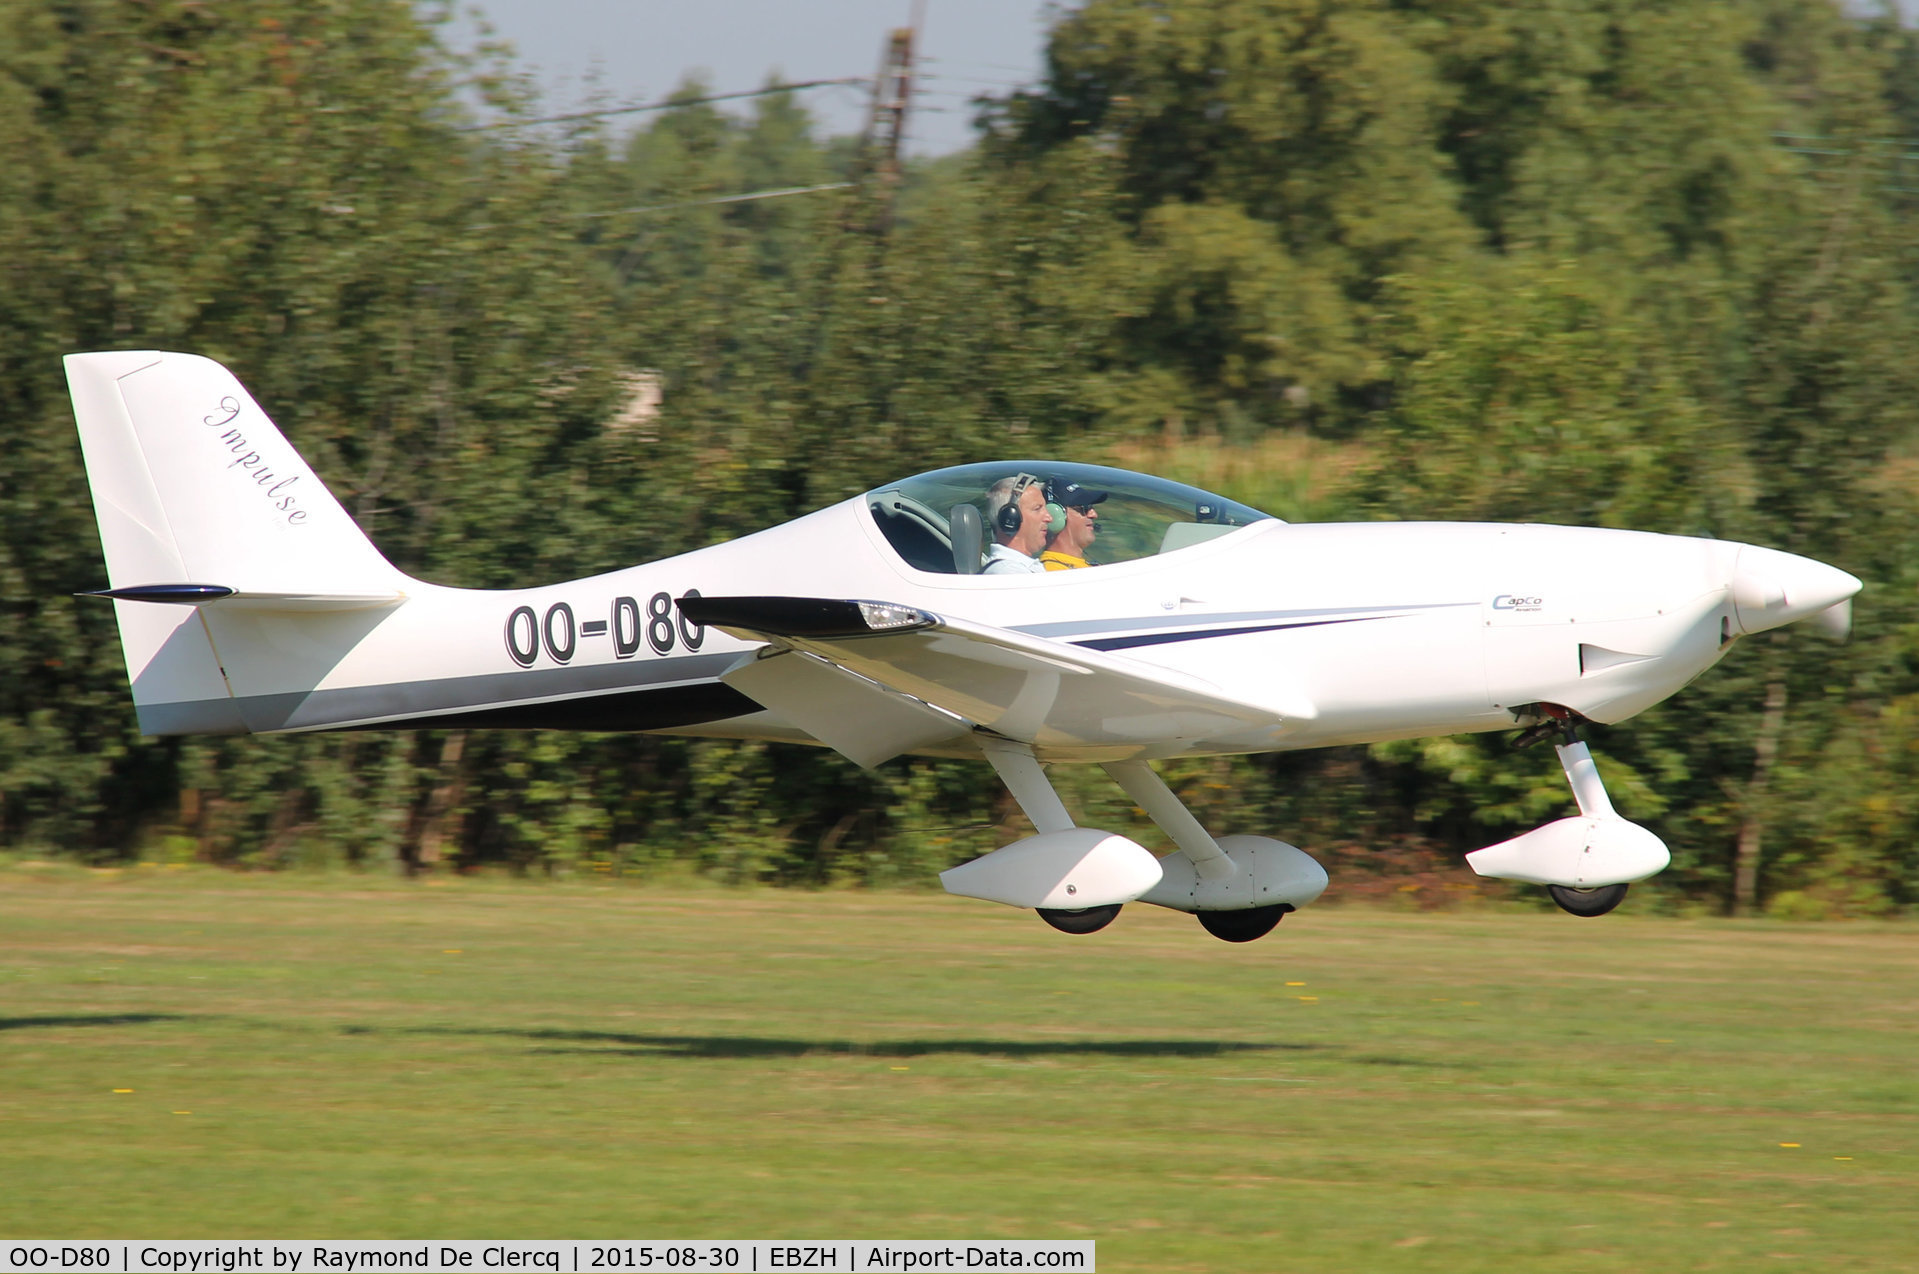 OO-D80, Impulse 100 C/N 02, Landing at Kiewit/Hasselt.